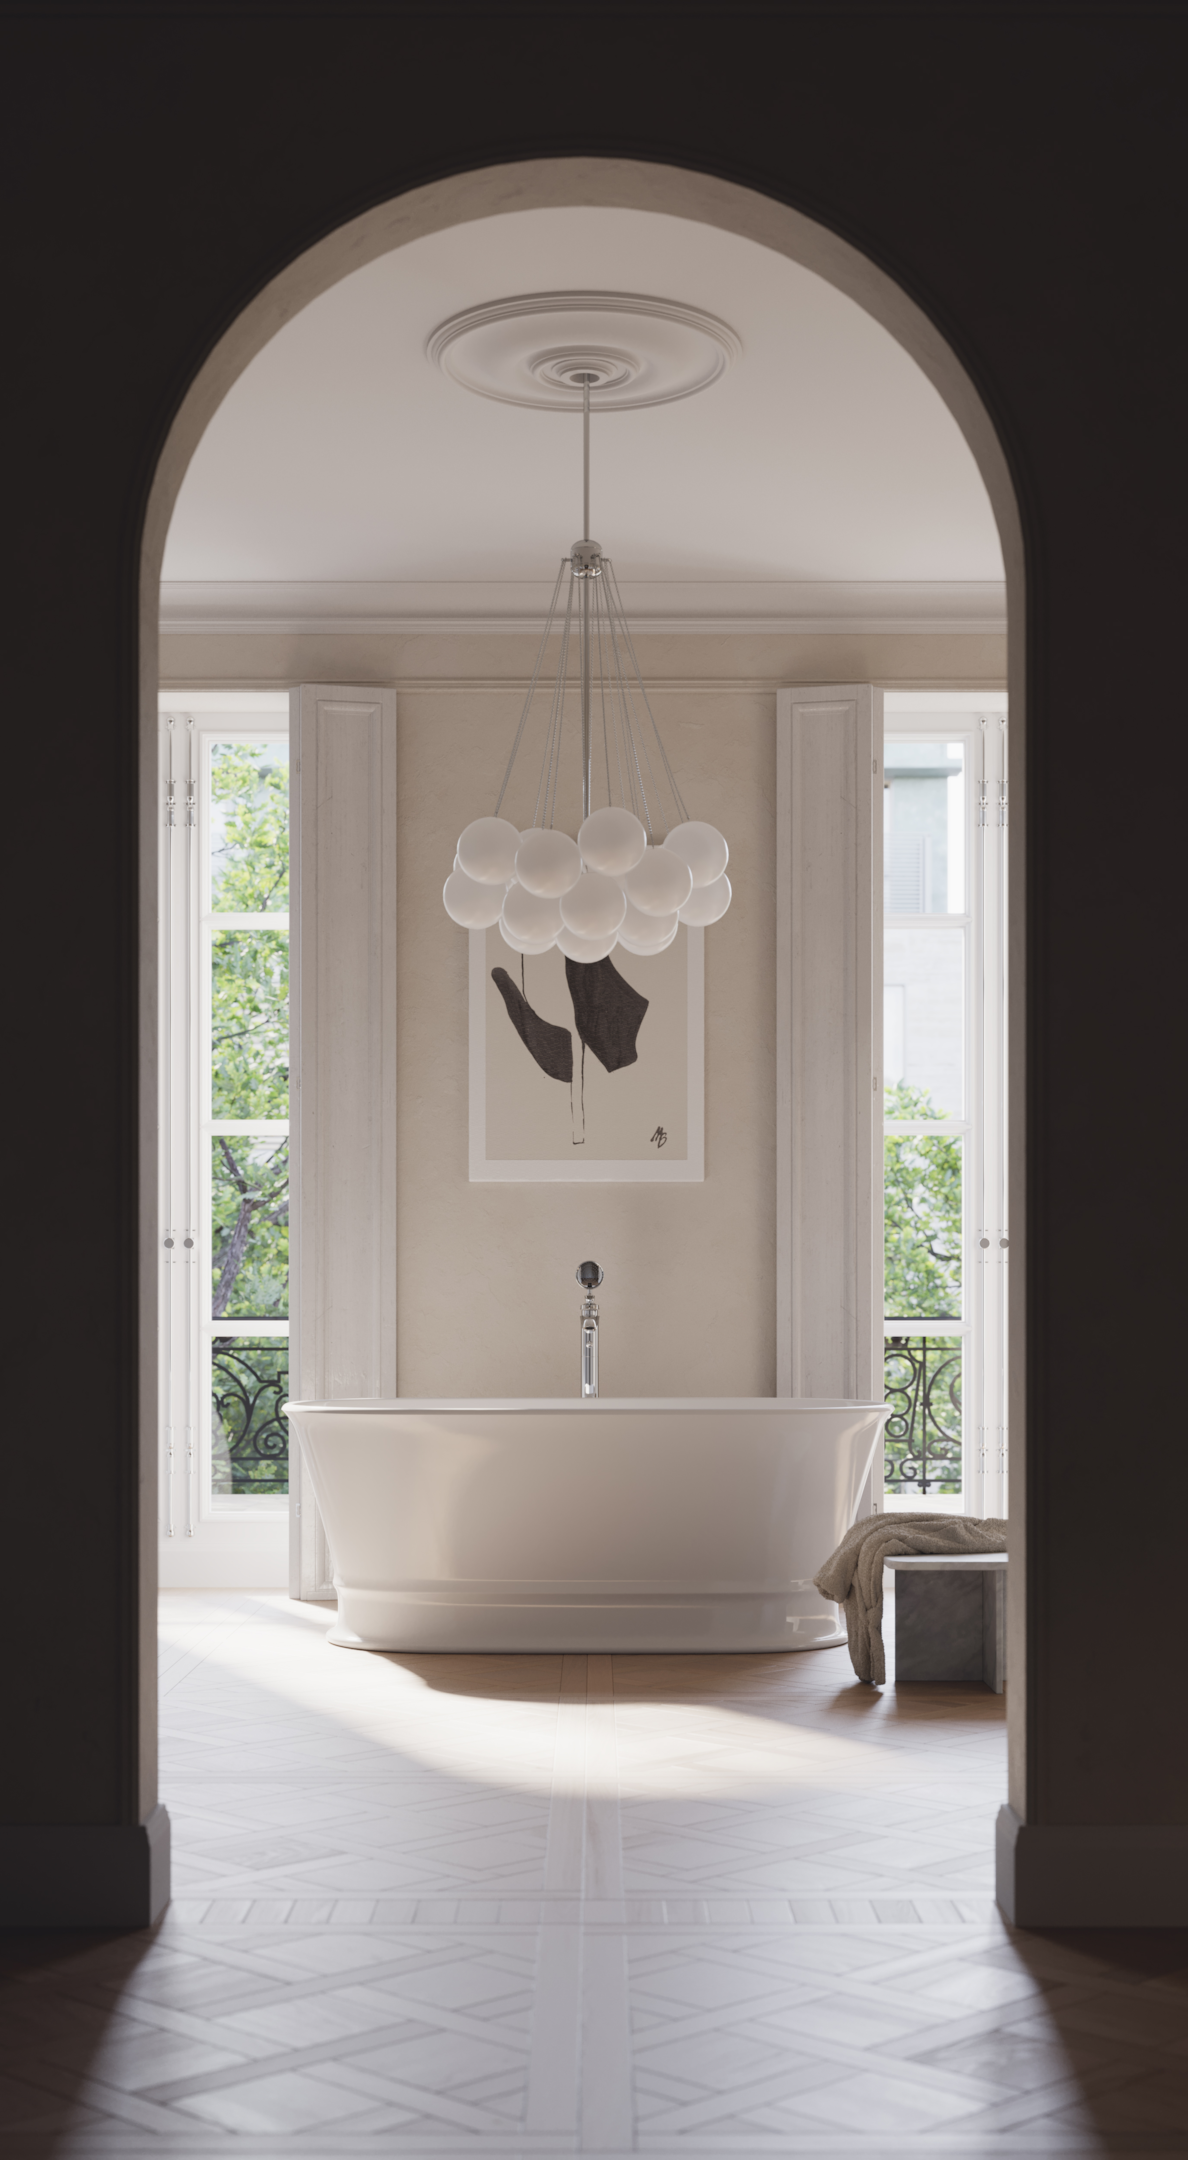 Łazienka w stylu french modern. Jak stworzyć wnętrze w świeżym stylu?